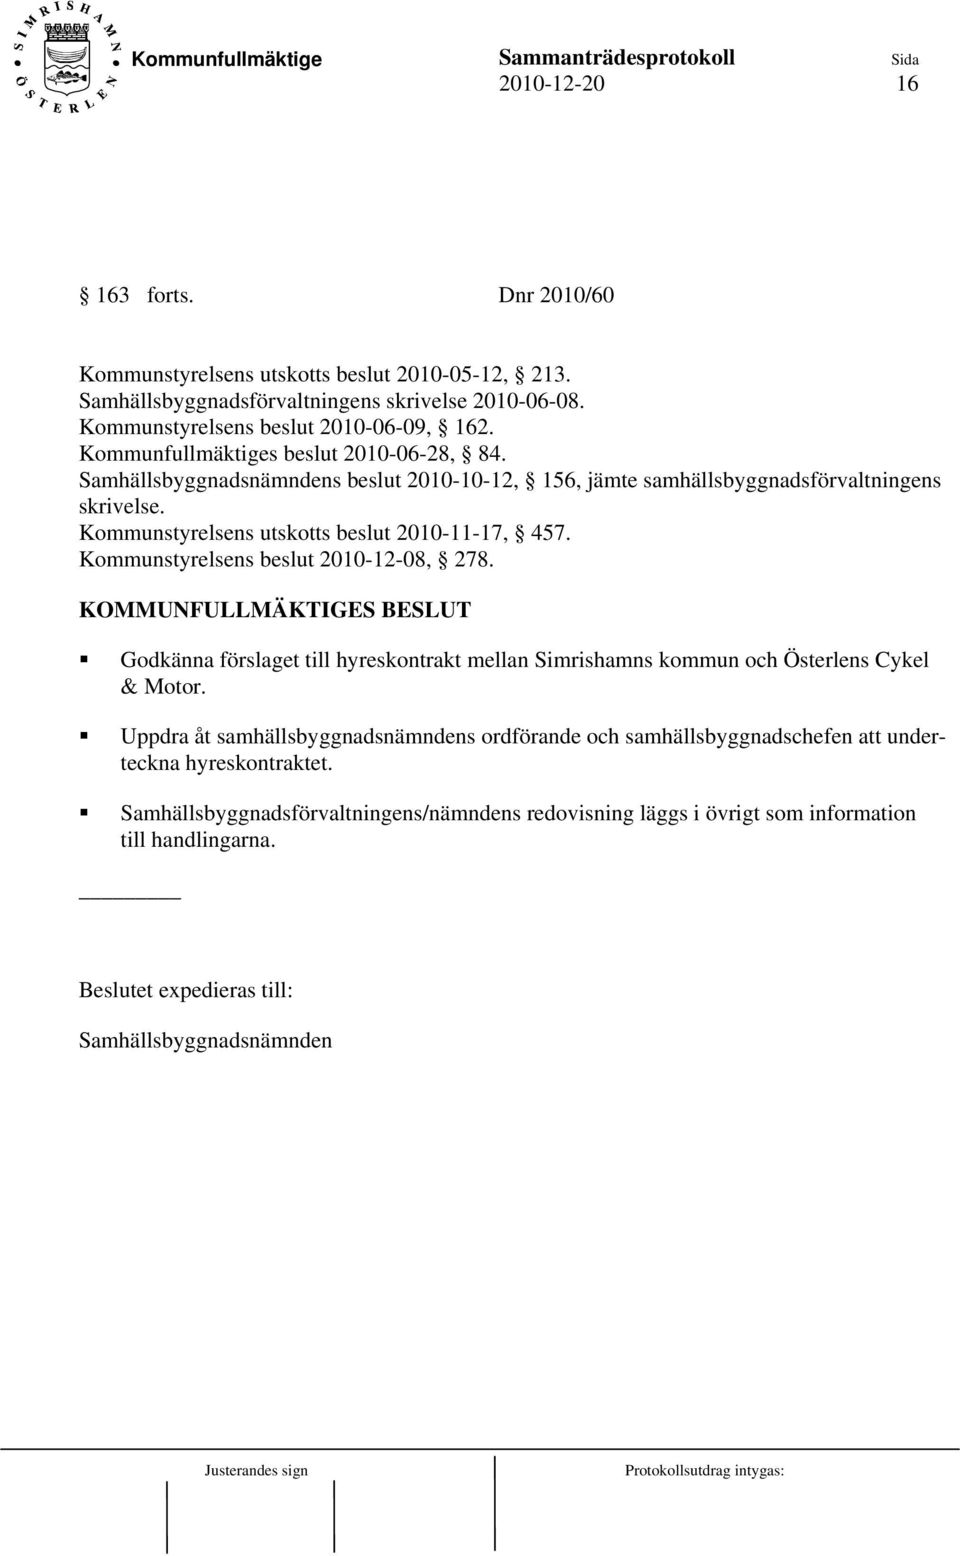 Kommunstyrelsens beslut 2010-12-08, 278. KOMMUNFULLMÄKTIGES BESLUT Godkänna förslaget till hyreskontrakt mellan Simrishamns kommun och Österlens Cykel & Motor.